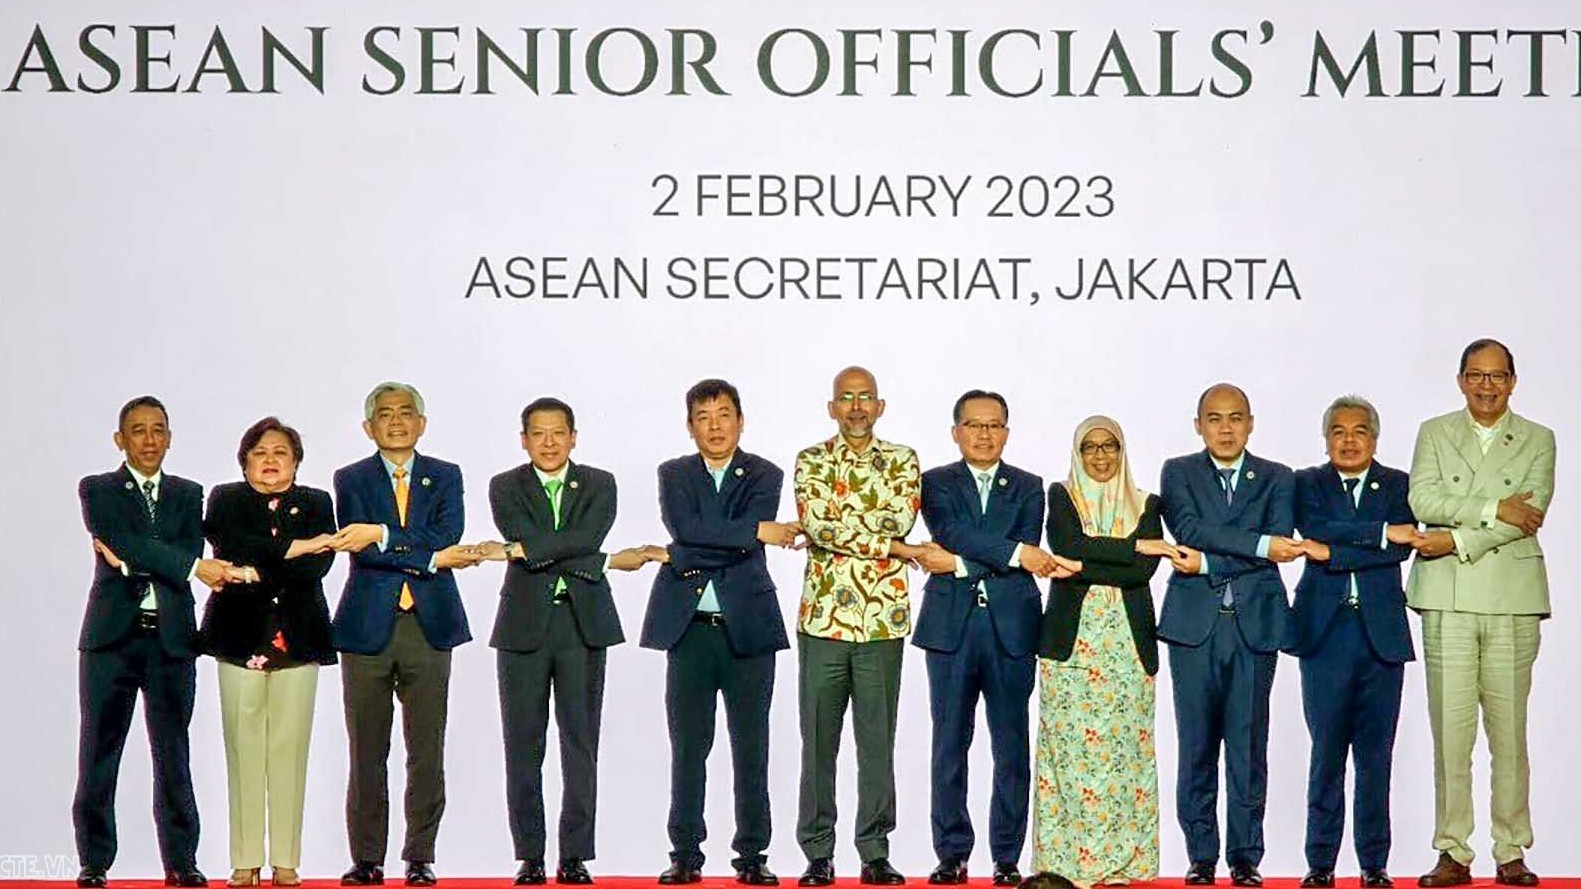 Quan chức cao cấp họp trù bị cho Hội nghị hẹp Bộ trưởng Ngoại giao ASEAN